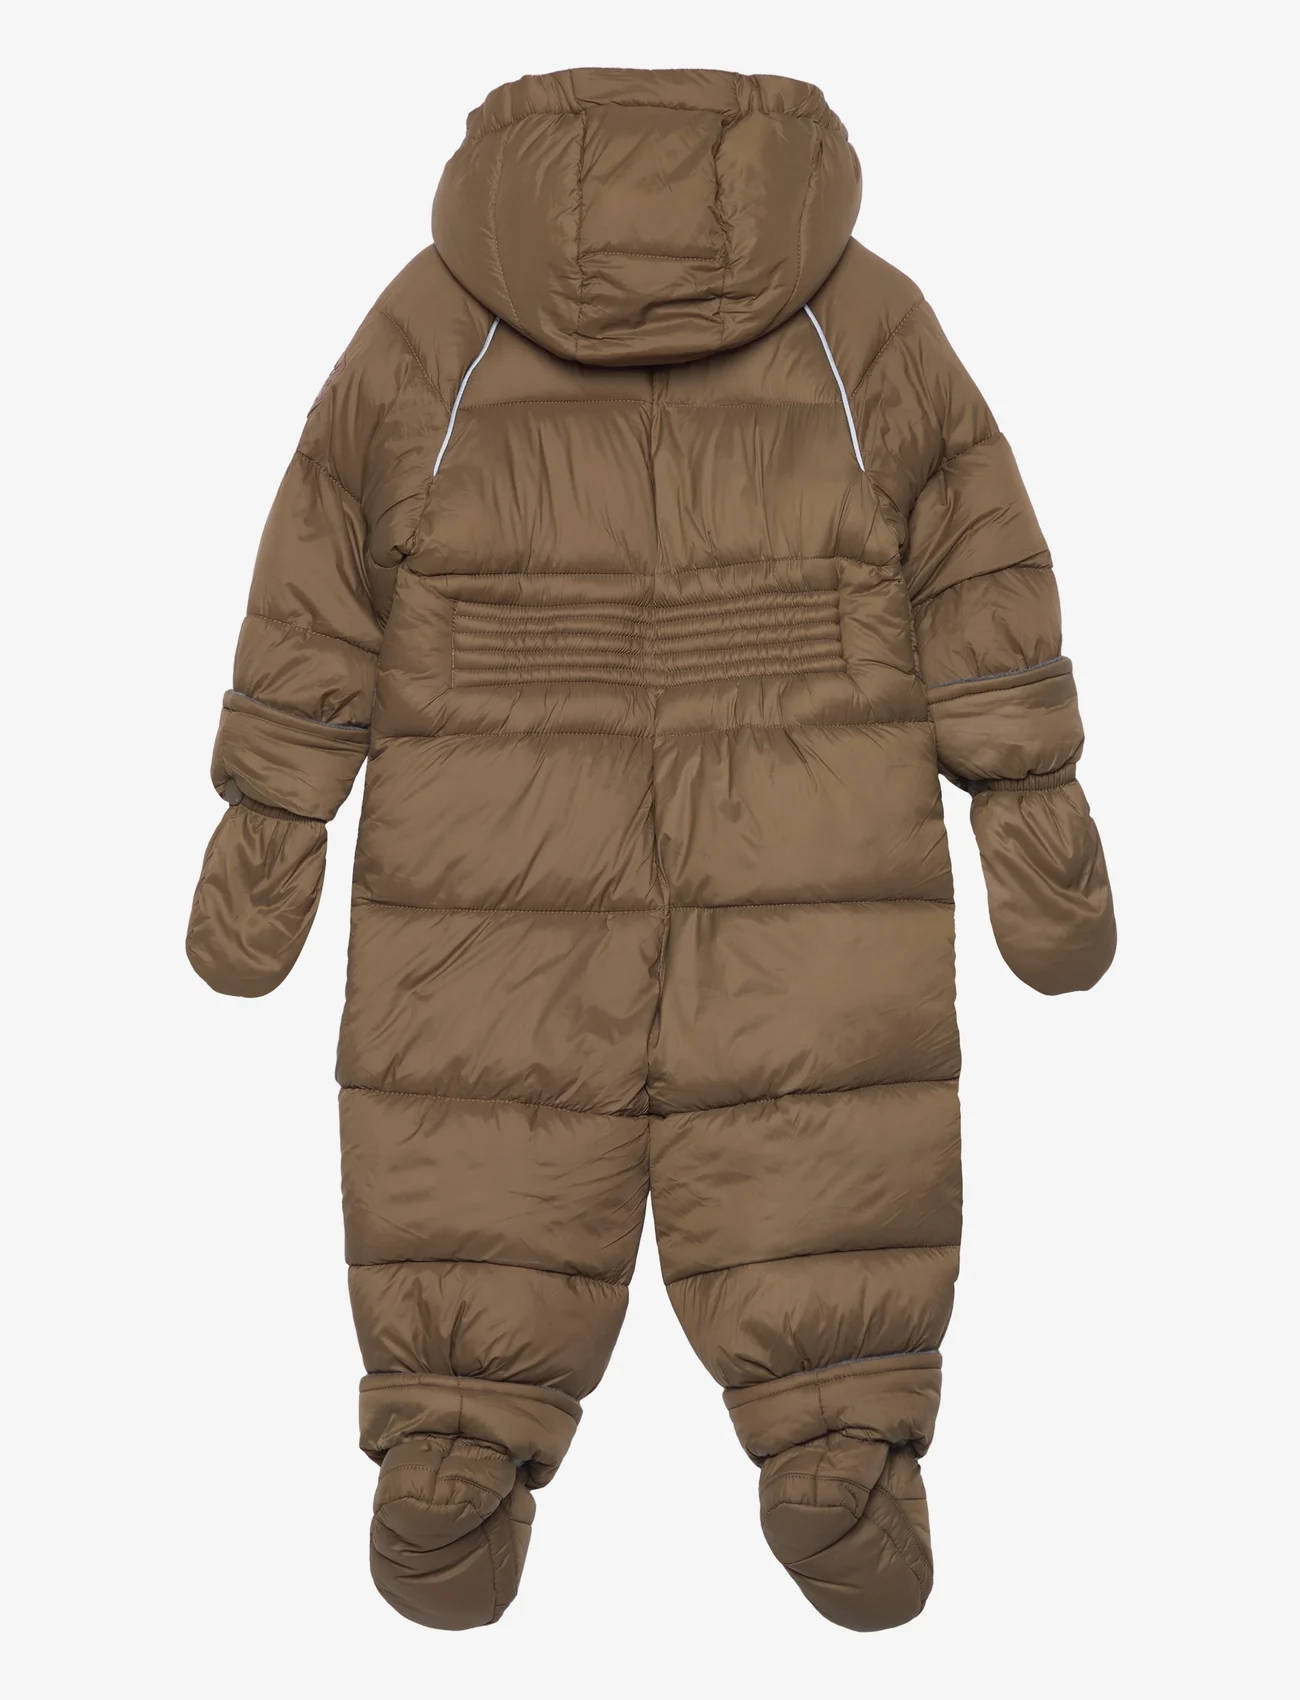 mikk-line - Puff Baby Suit w Acc Rec. - snowsuit - beech - 1